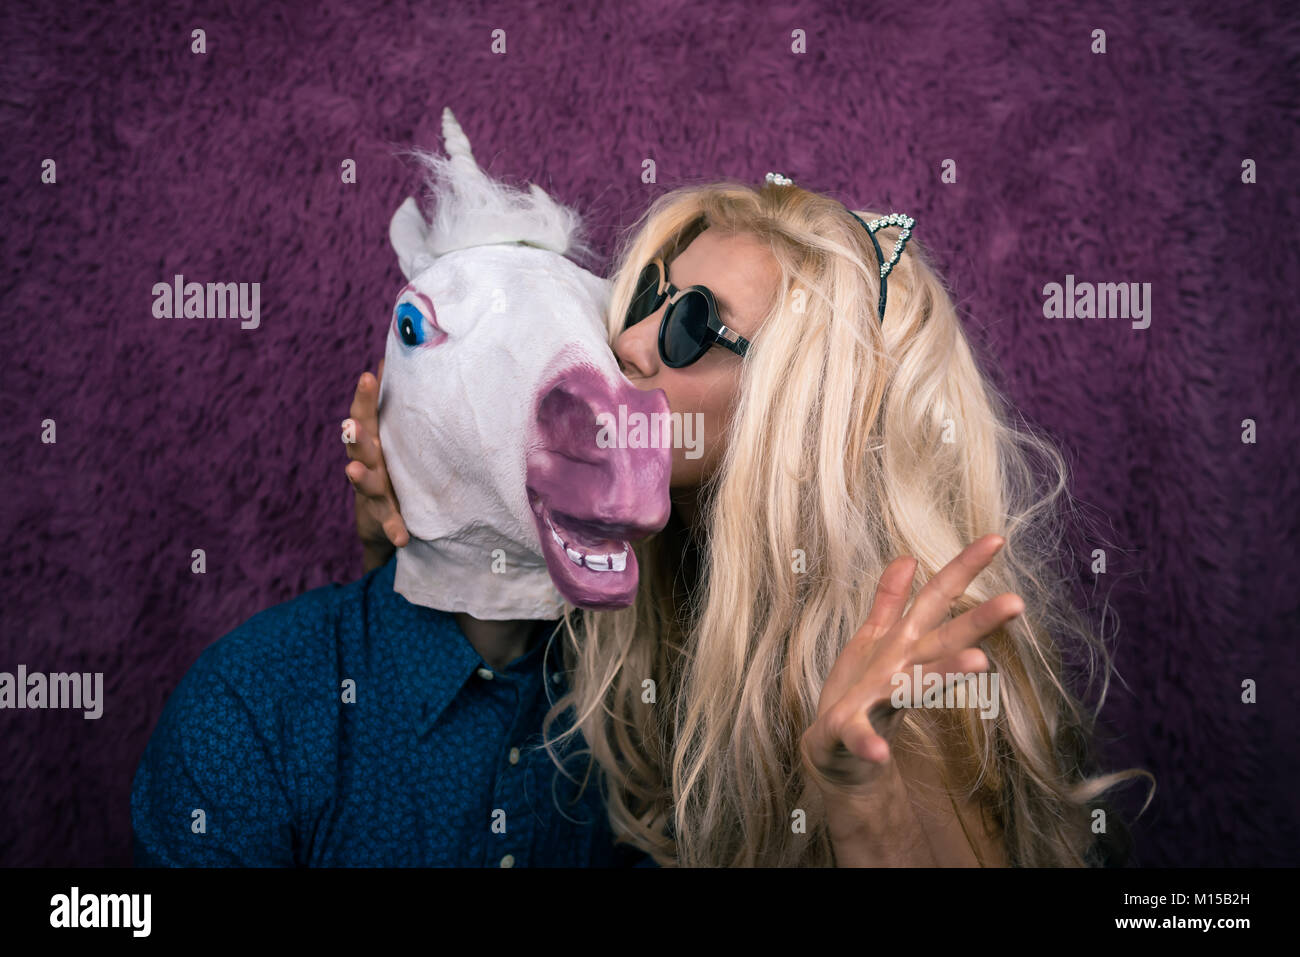 Freaky giovane donna kissing felice unicorn sullo sfondo viola. Bionda espressiva con strano ragazzo. Insolito ci si siede insieme Foto Stock